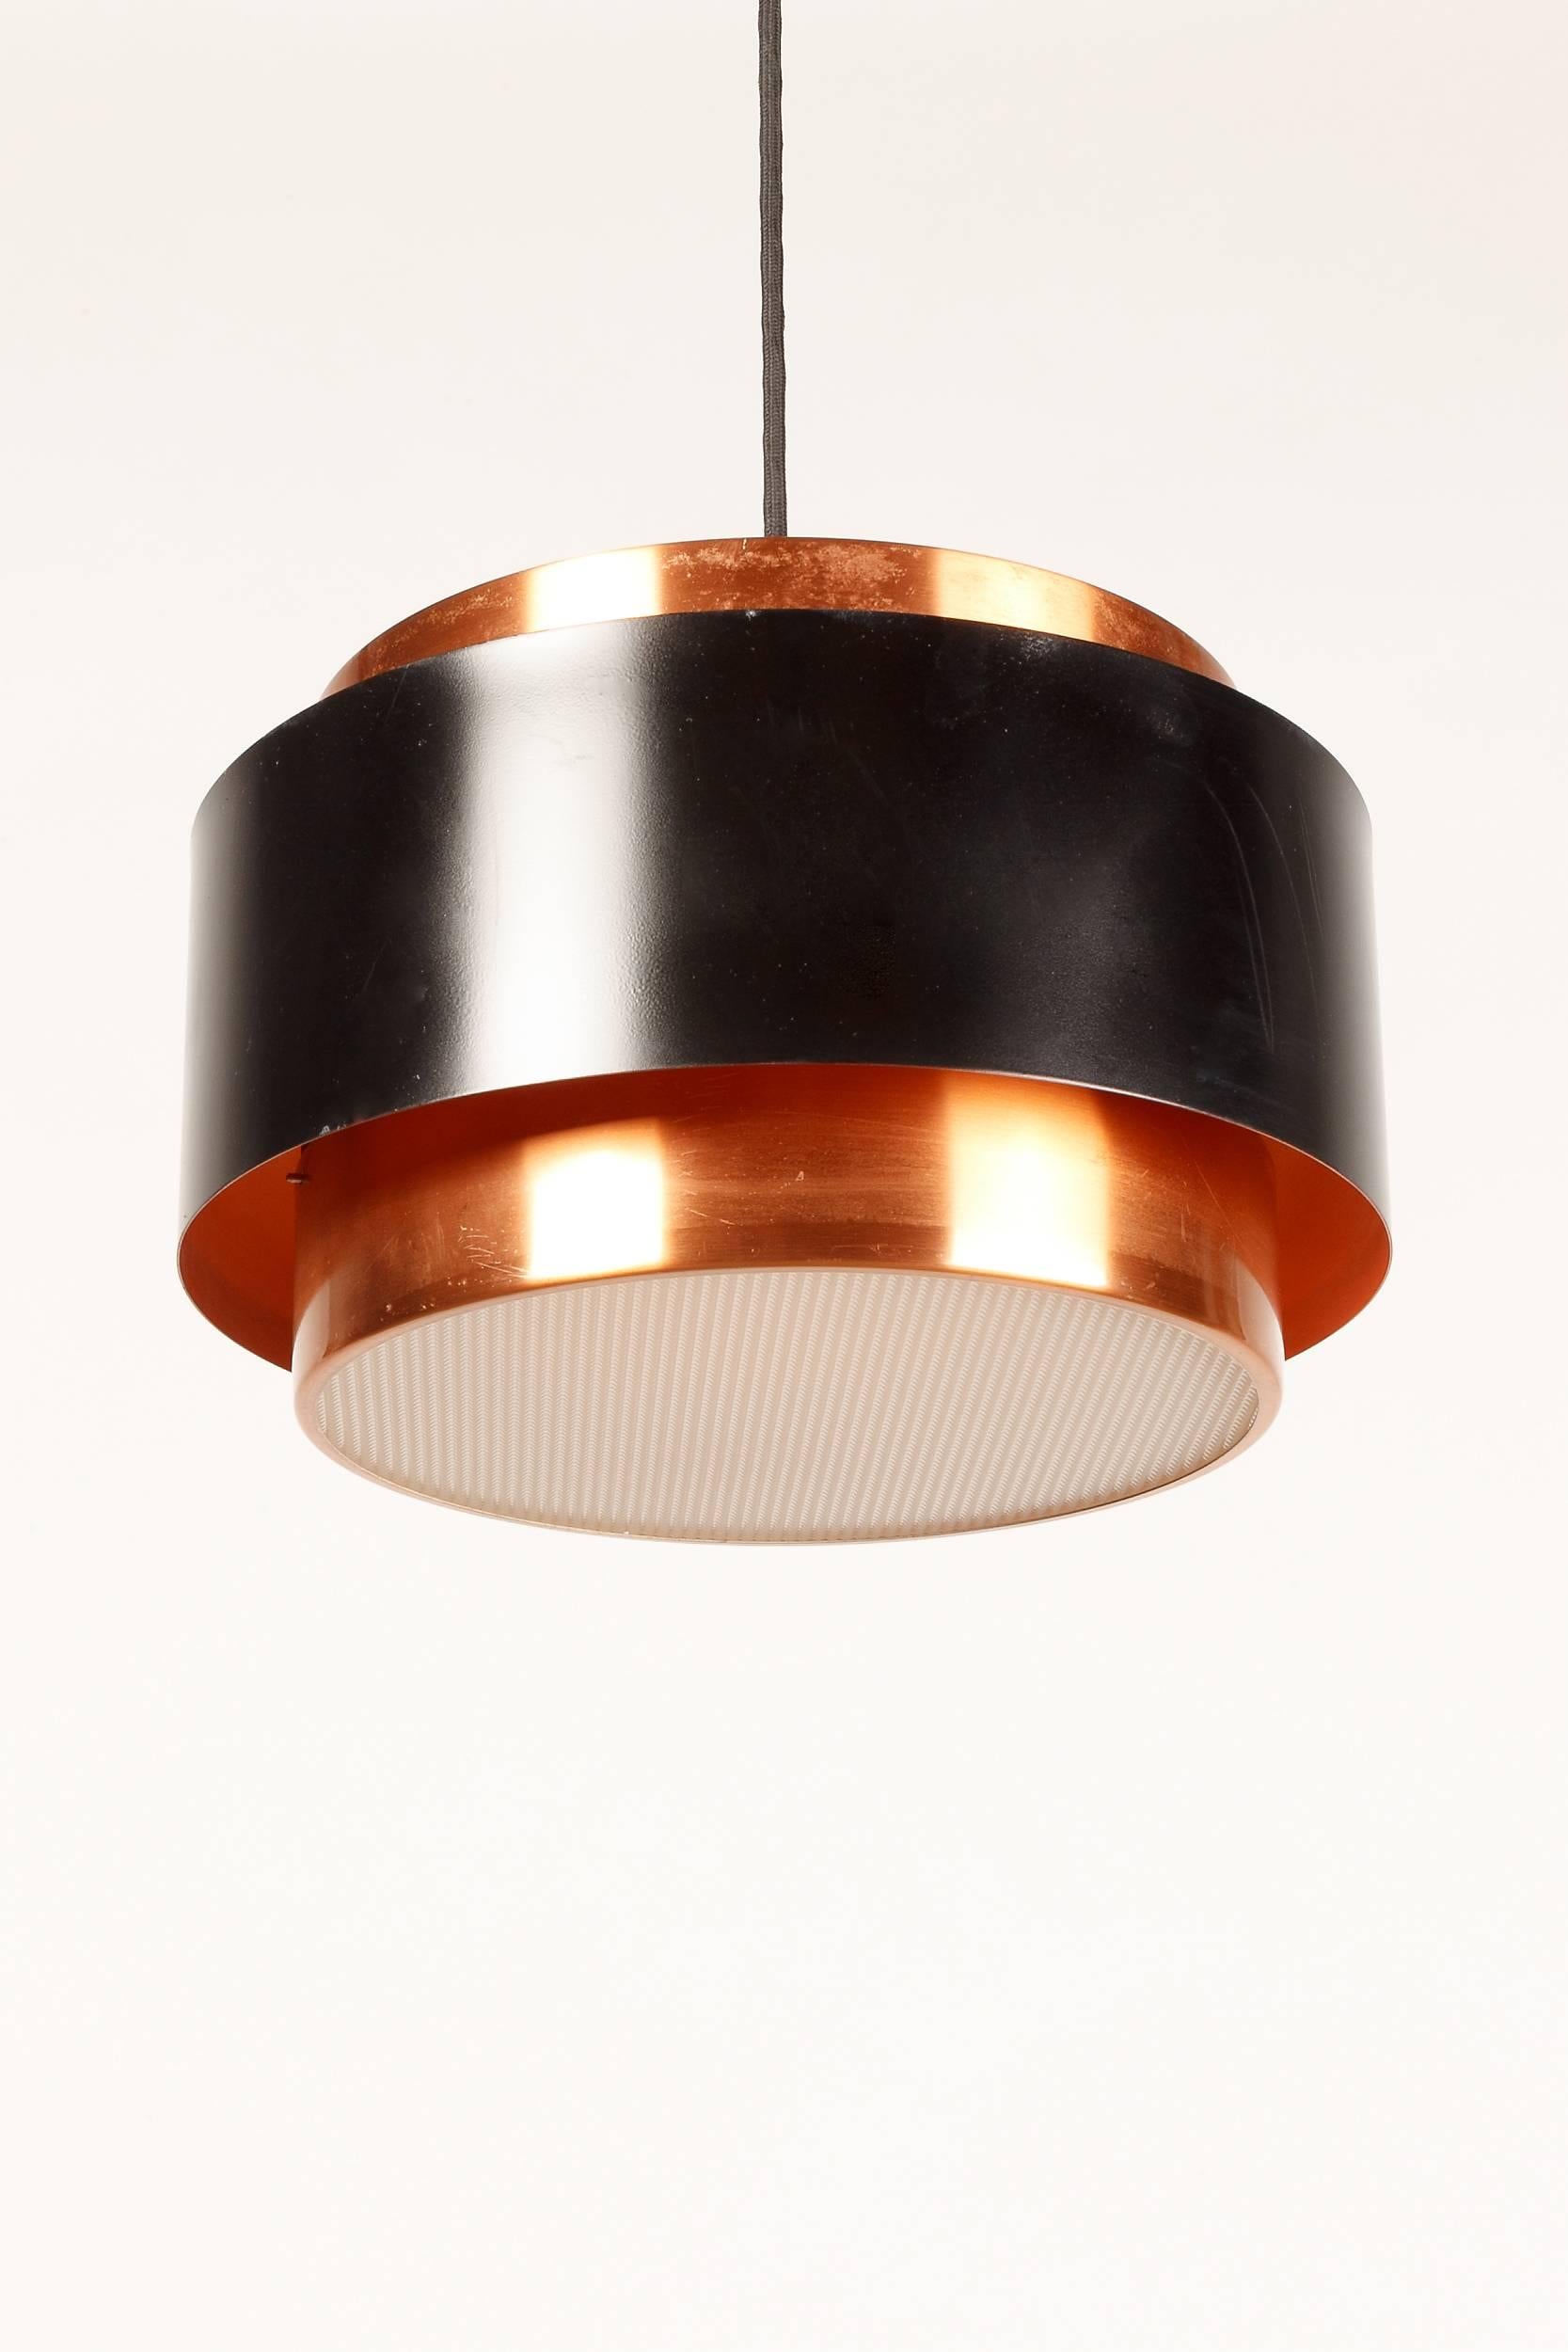 Mid-Century Modern Danish Saturn Copper Pendant by Jo Hammerborg for Fog & Morup 